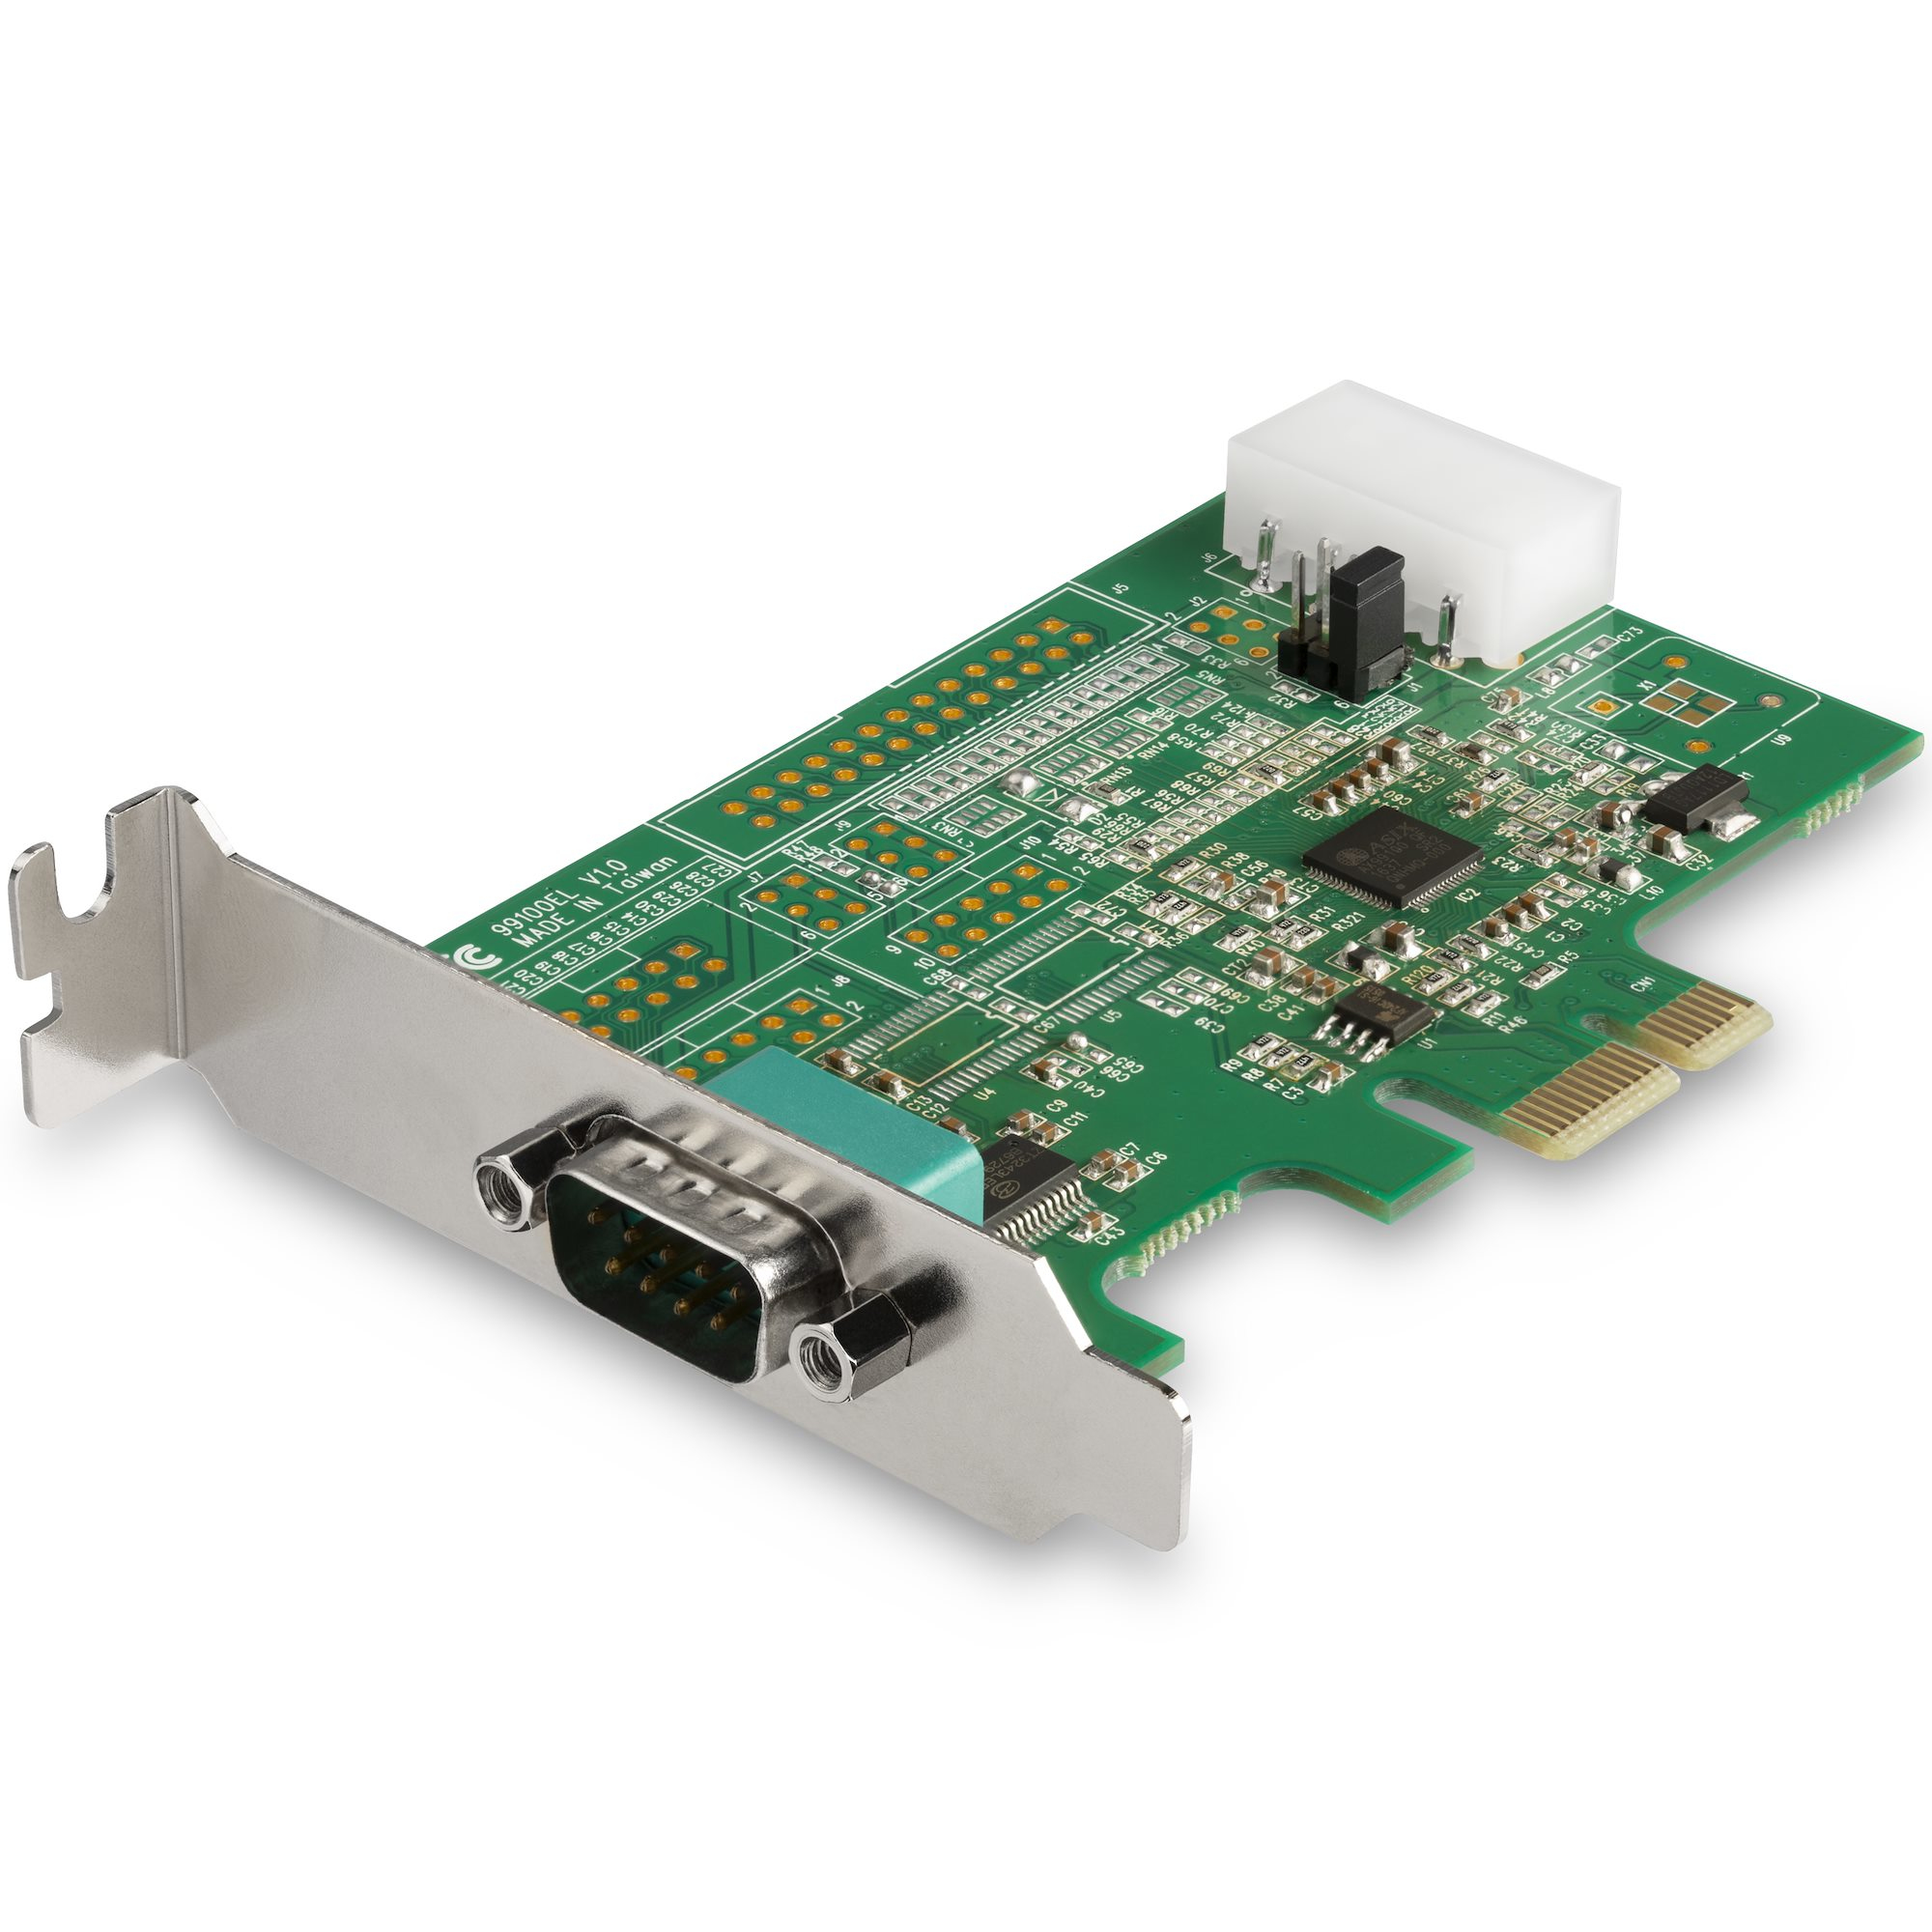 Image of StarTech.com Scheda adattatore seriale PCI Express RS232 a 4 porte - Scheda controller host seriale PCIe RS232 - Scheda da PCIe a seriale DB9 - 16950 UART - Scheda di espansione - Windows/Linux